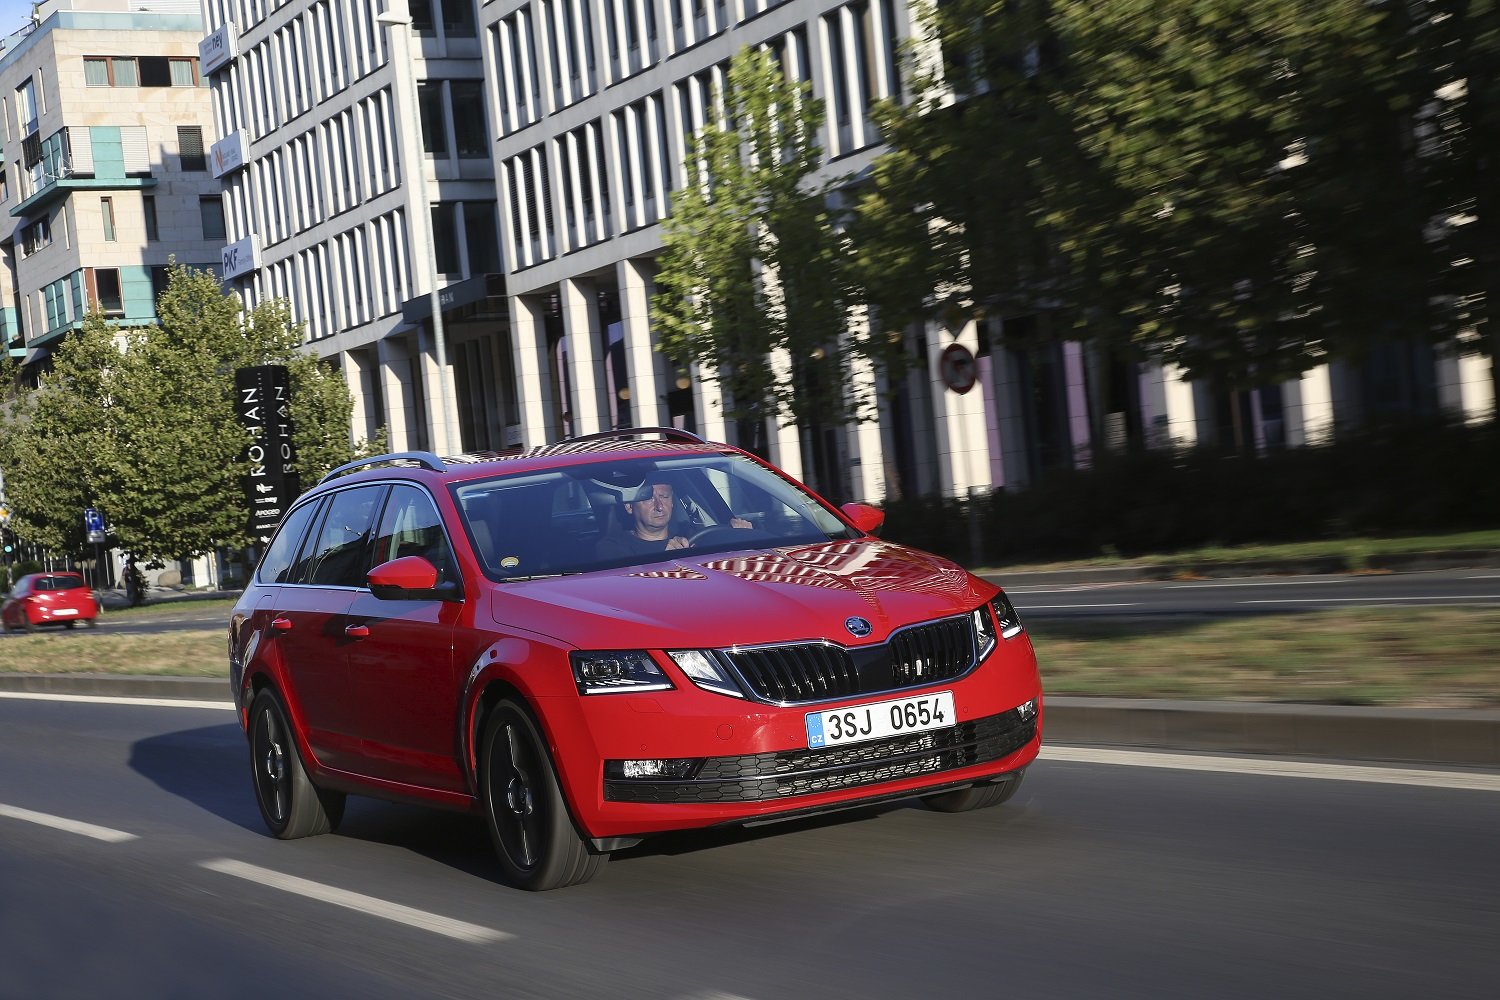 Nová Škoda Octavia G-TEC slibuje vyšší výkon, vyšší dojezd a nižší emise